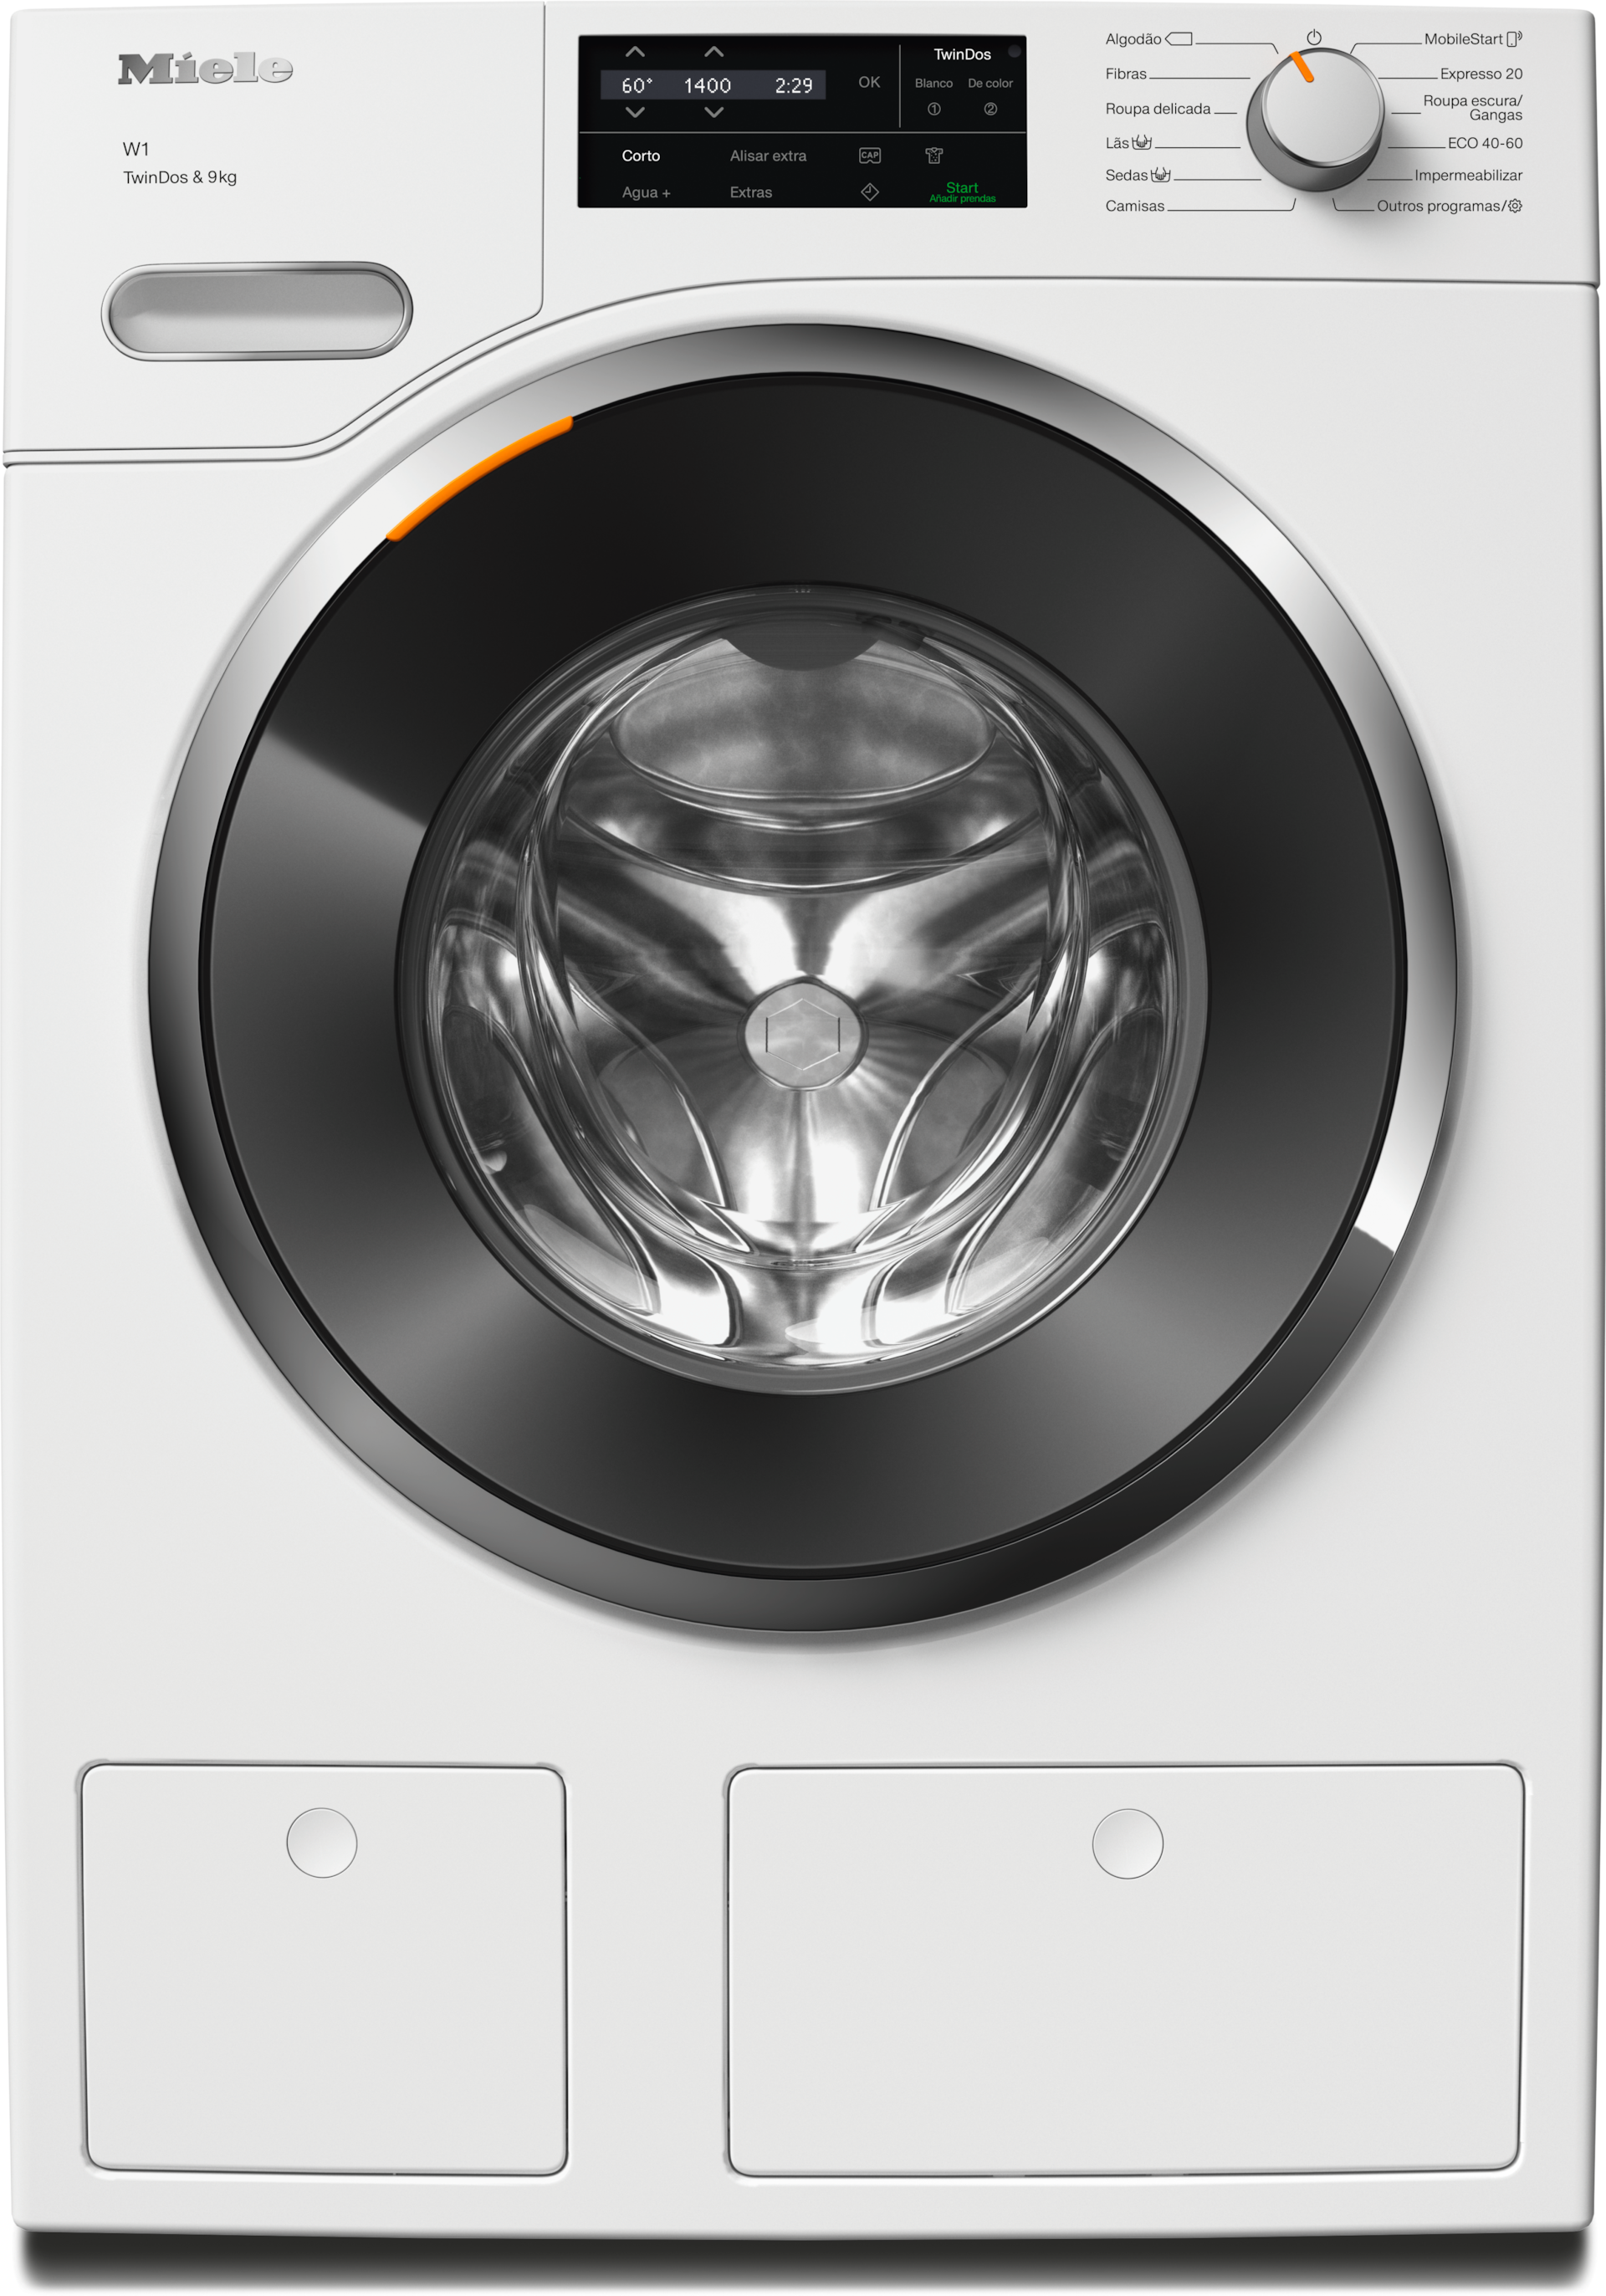 Máquinas de lavar roupa - WWG660 WCS TDos&9kg Branco lótus - 1